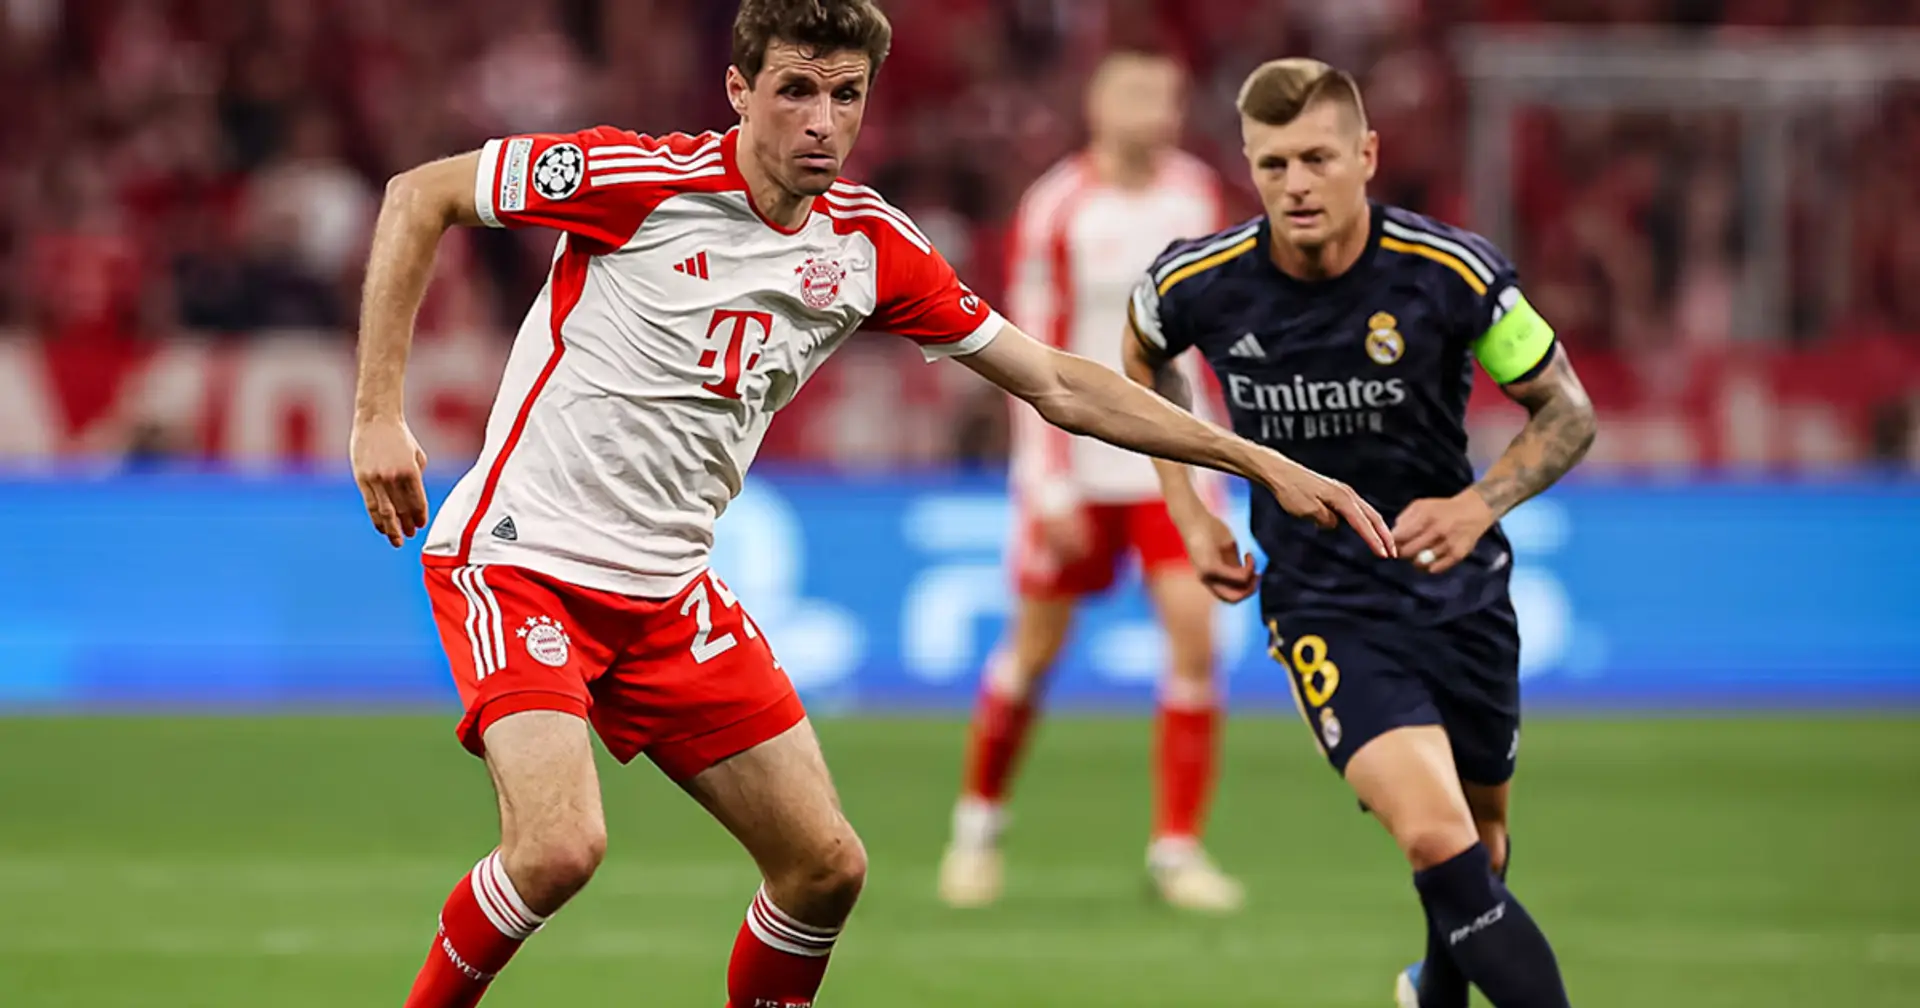 "Es geht um Millimeter": Thomas Müller erwartet ein spannendes Rückspiel gegen Real Madrid 